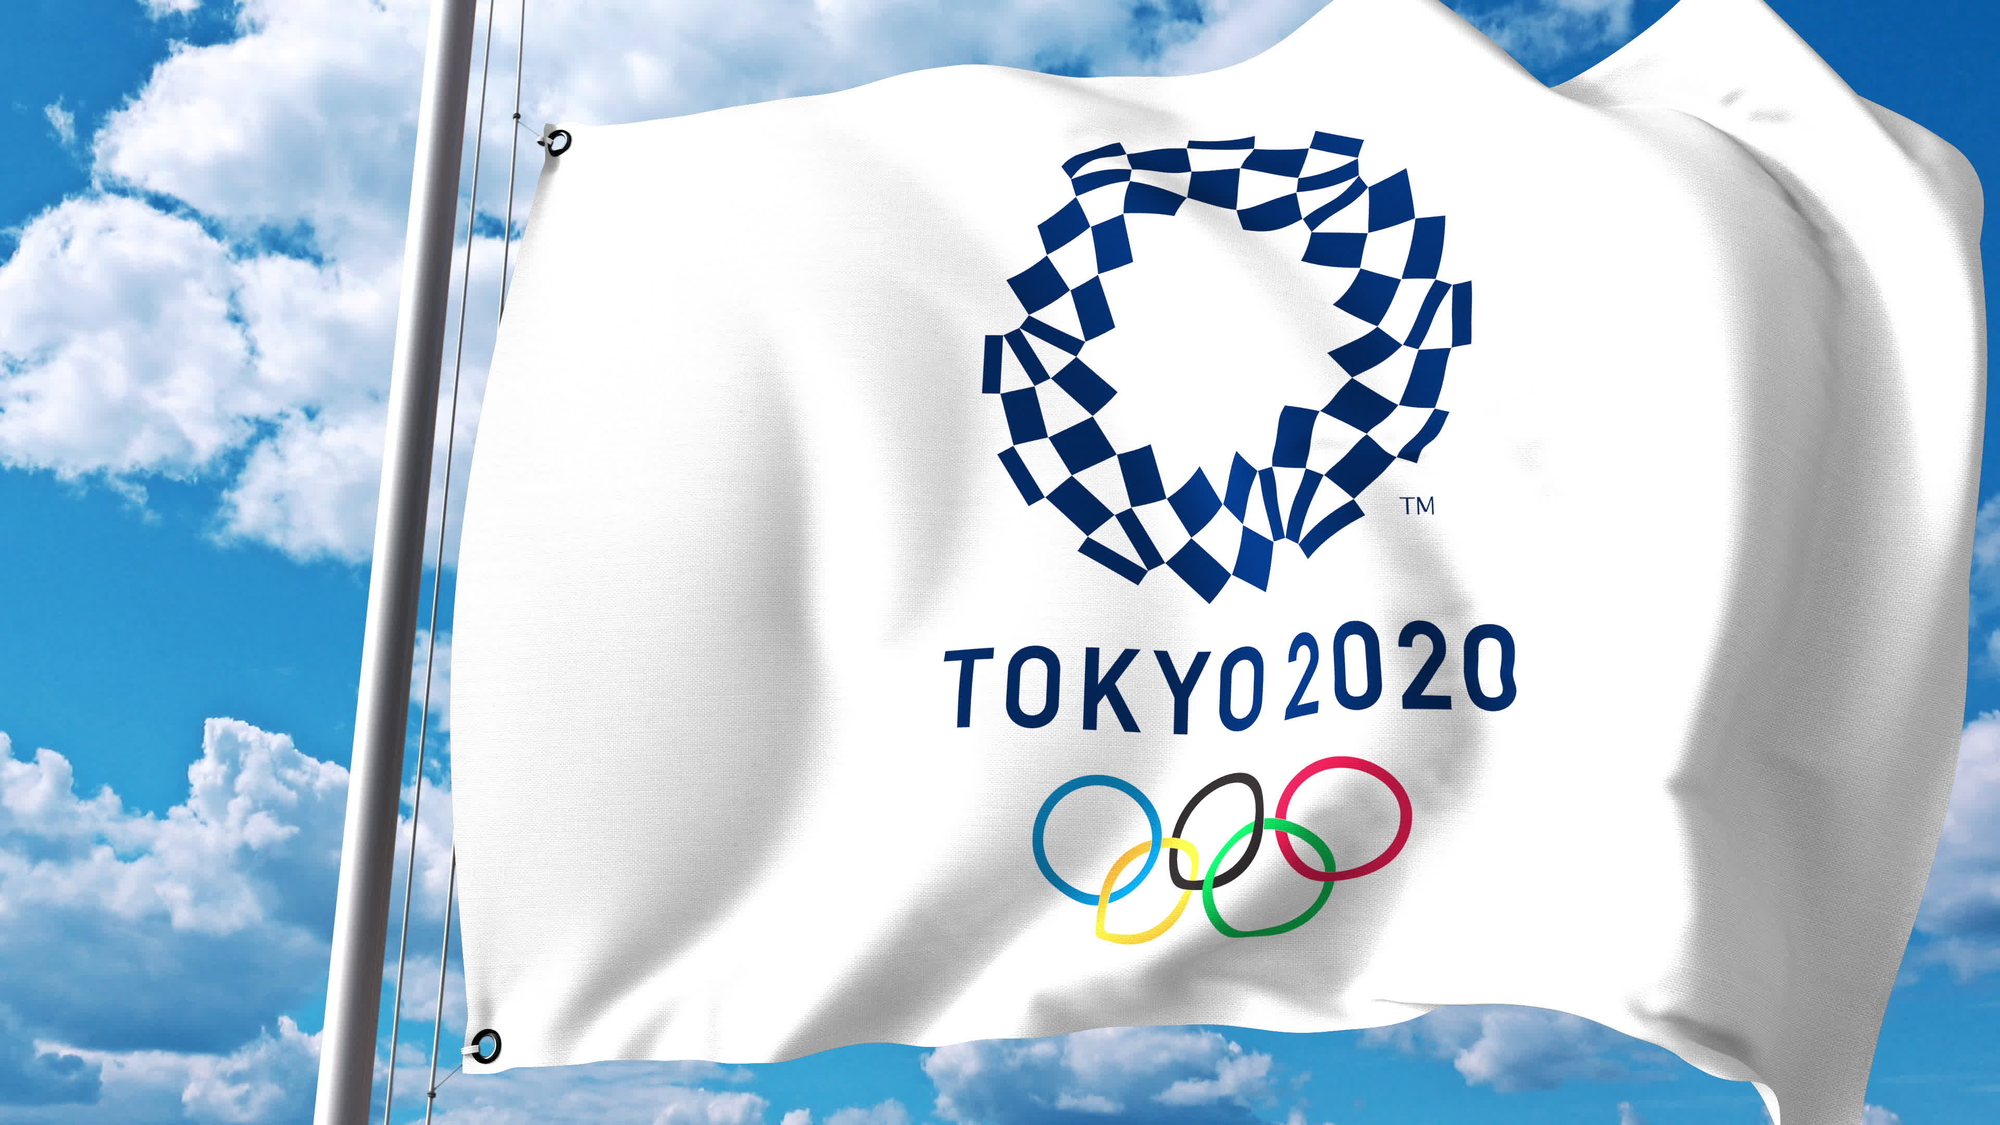 Les Jeux olympiques devraient avoir lieu du 23 juillet au 8 août 2021 à Tokyo - Crédit photo : Compte Facebook @Tokyo2020